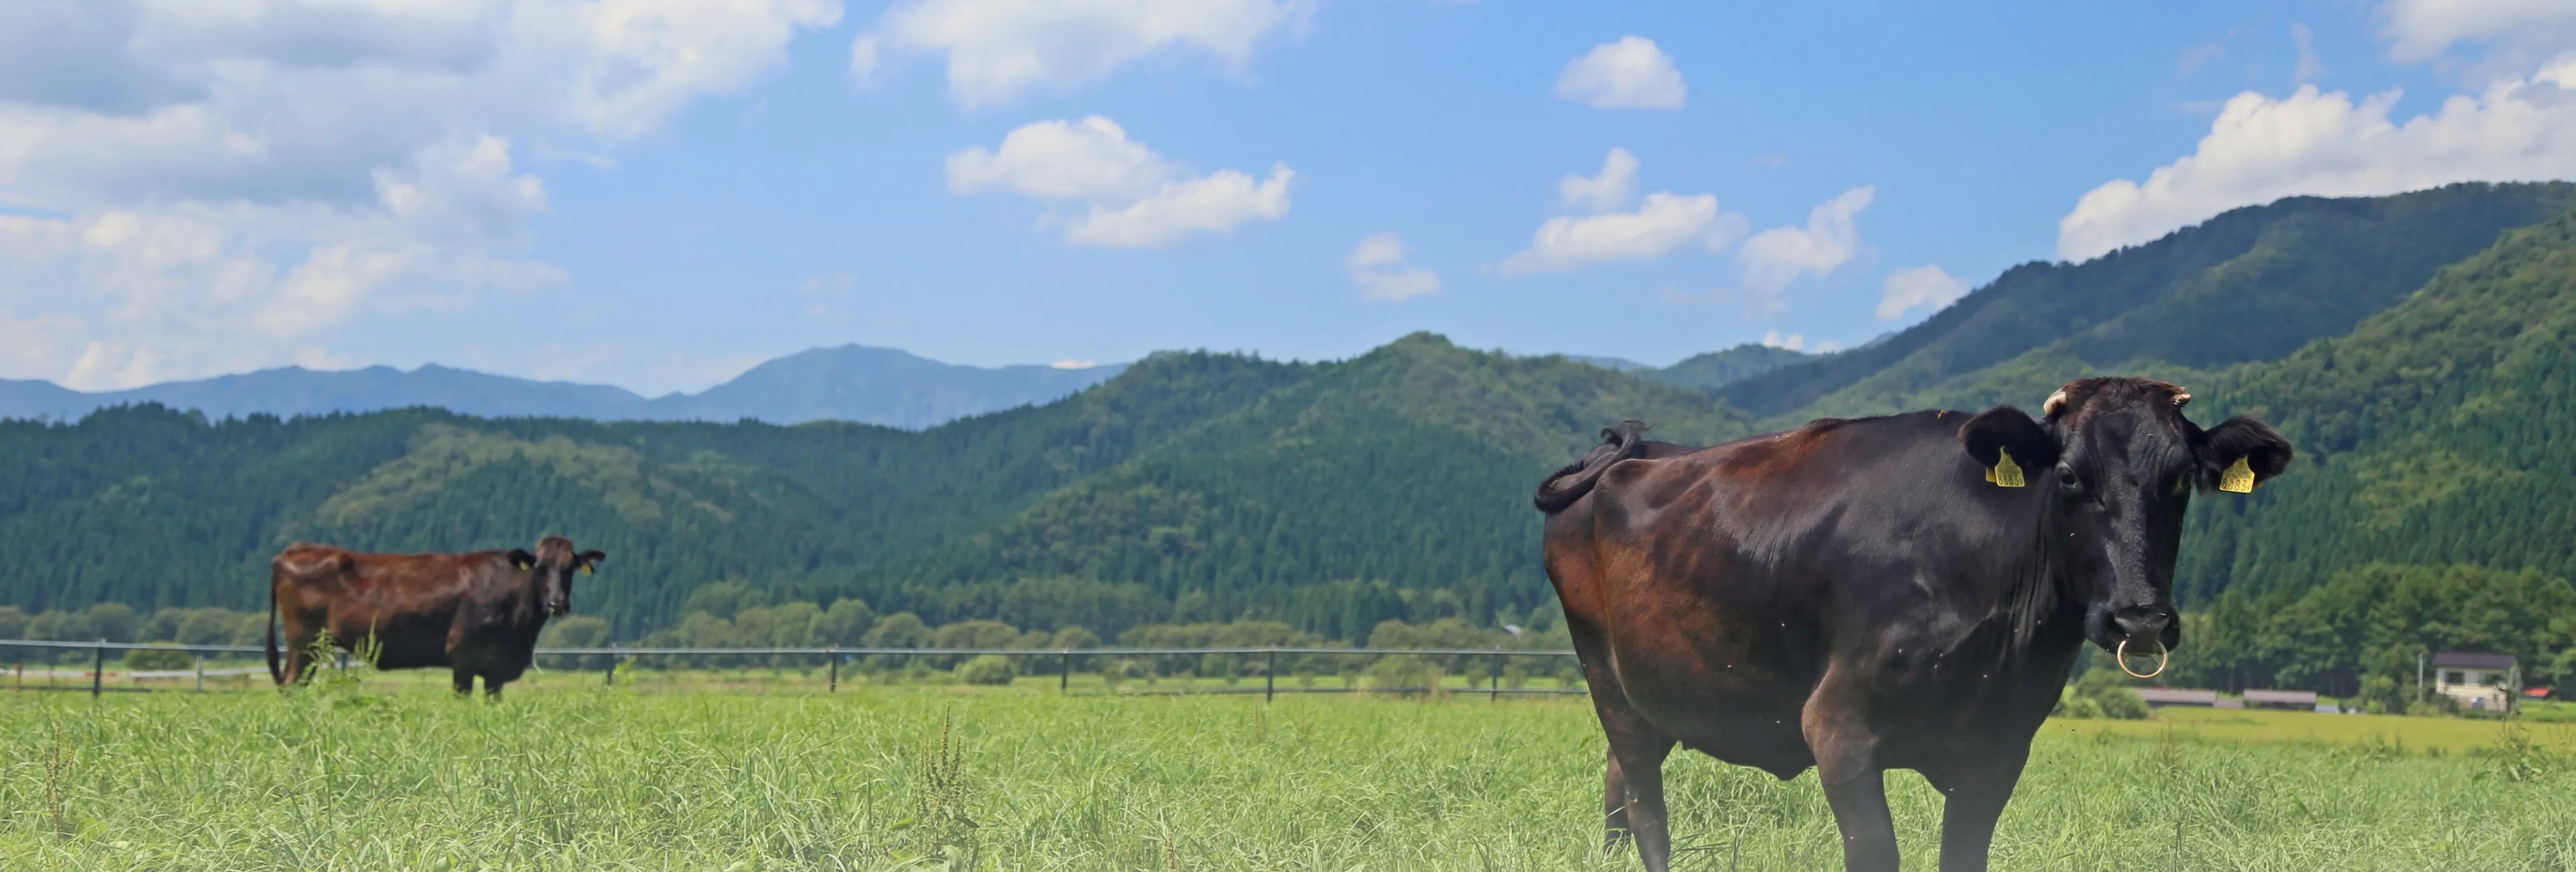 長崎牛が放牧されている様子